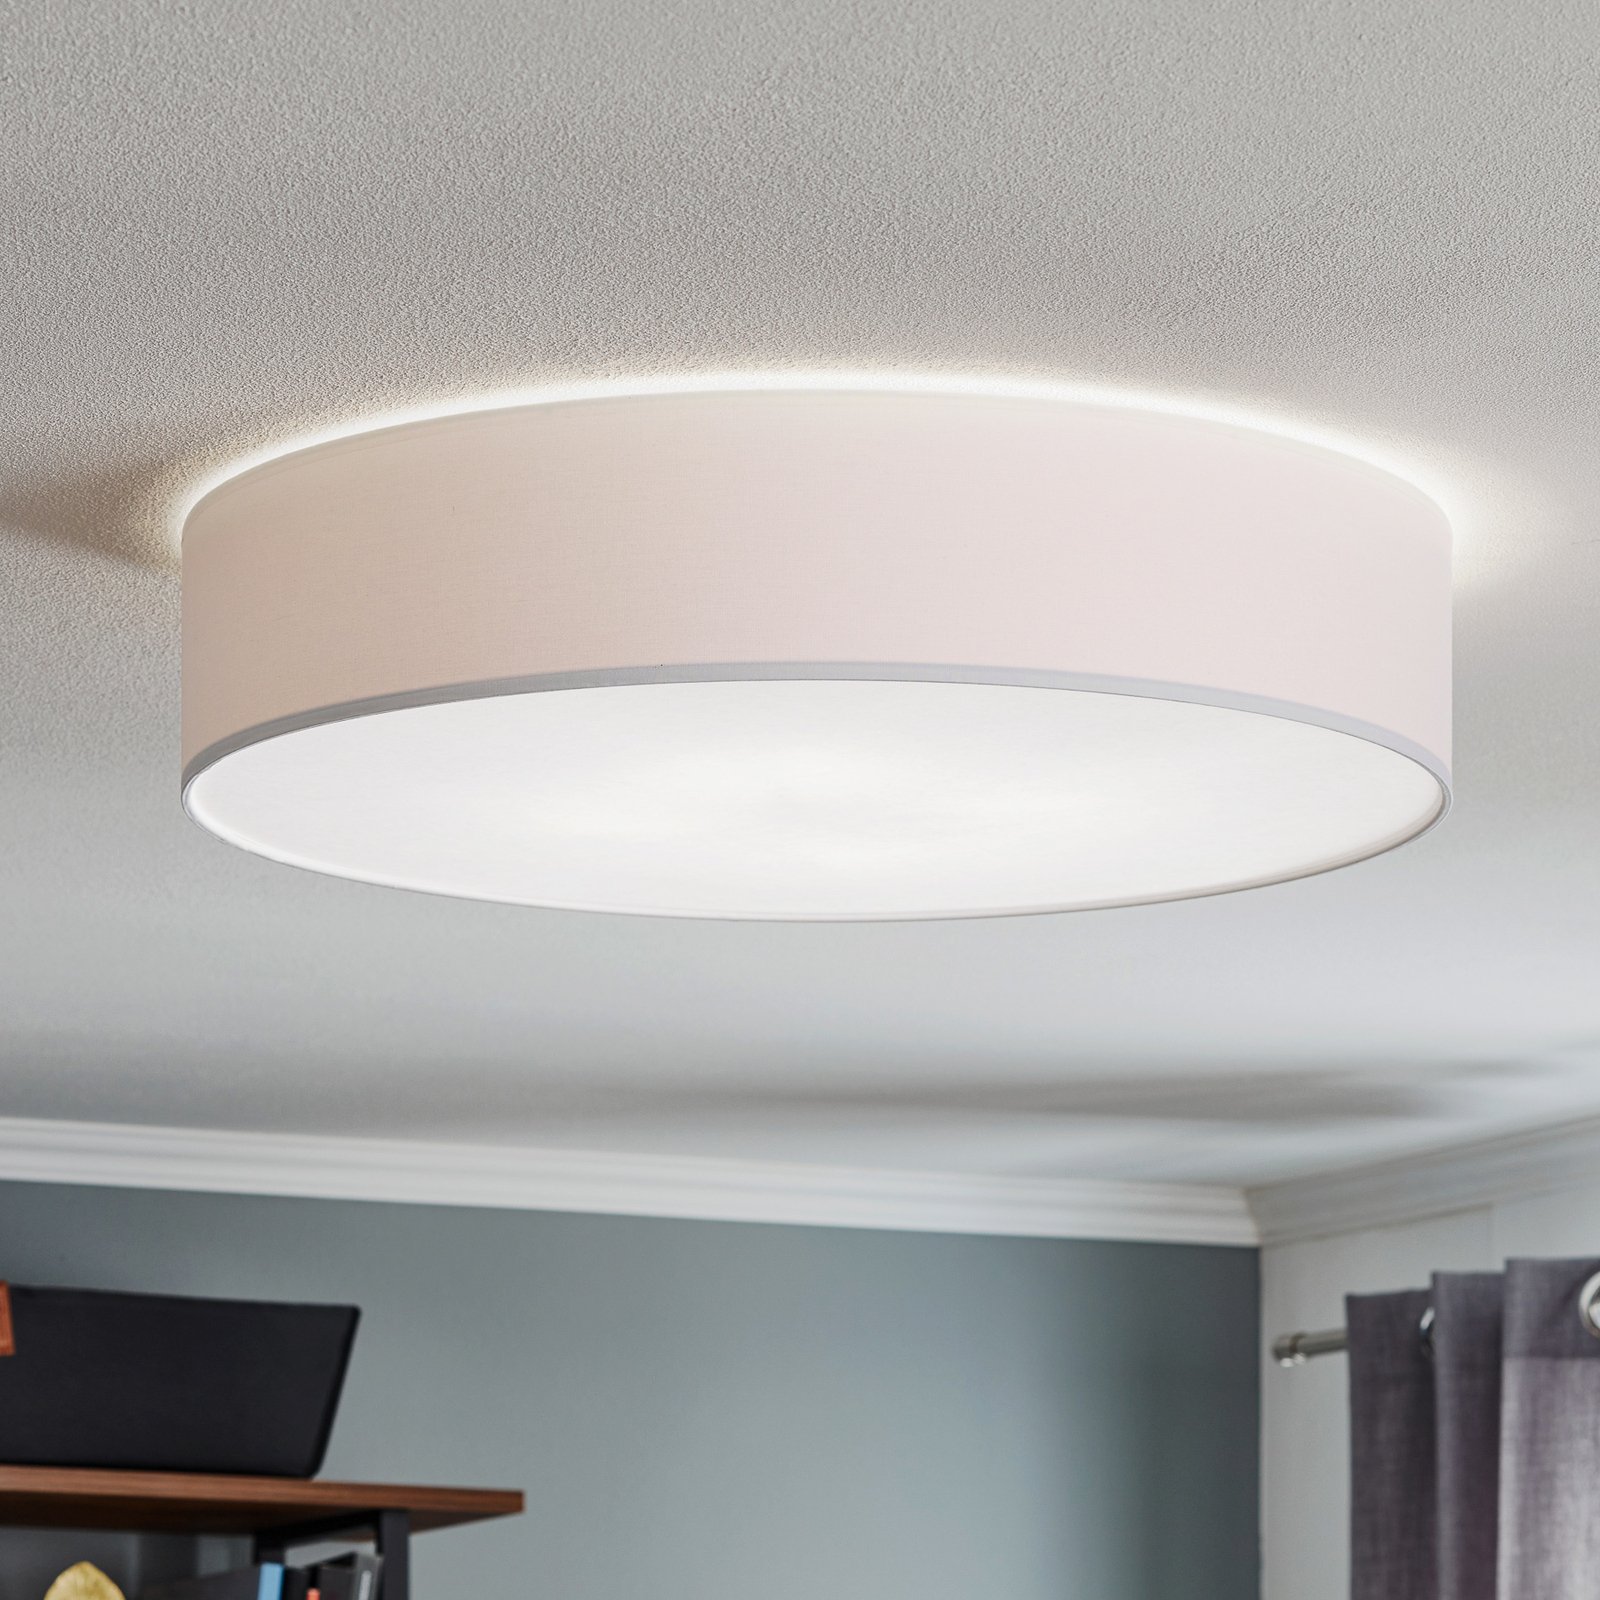 Rondo ceiling light, white Ø 60cm